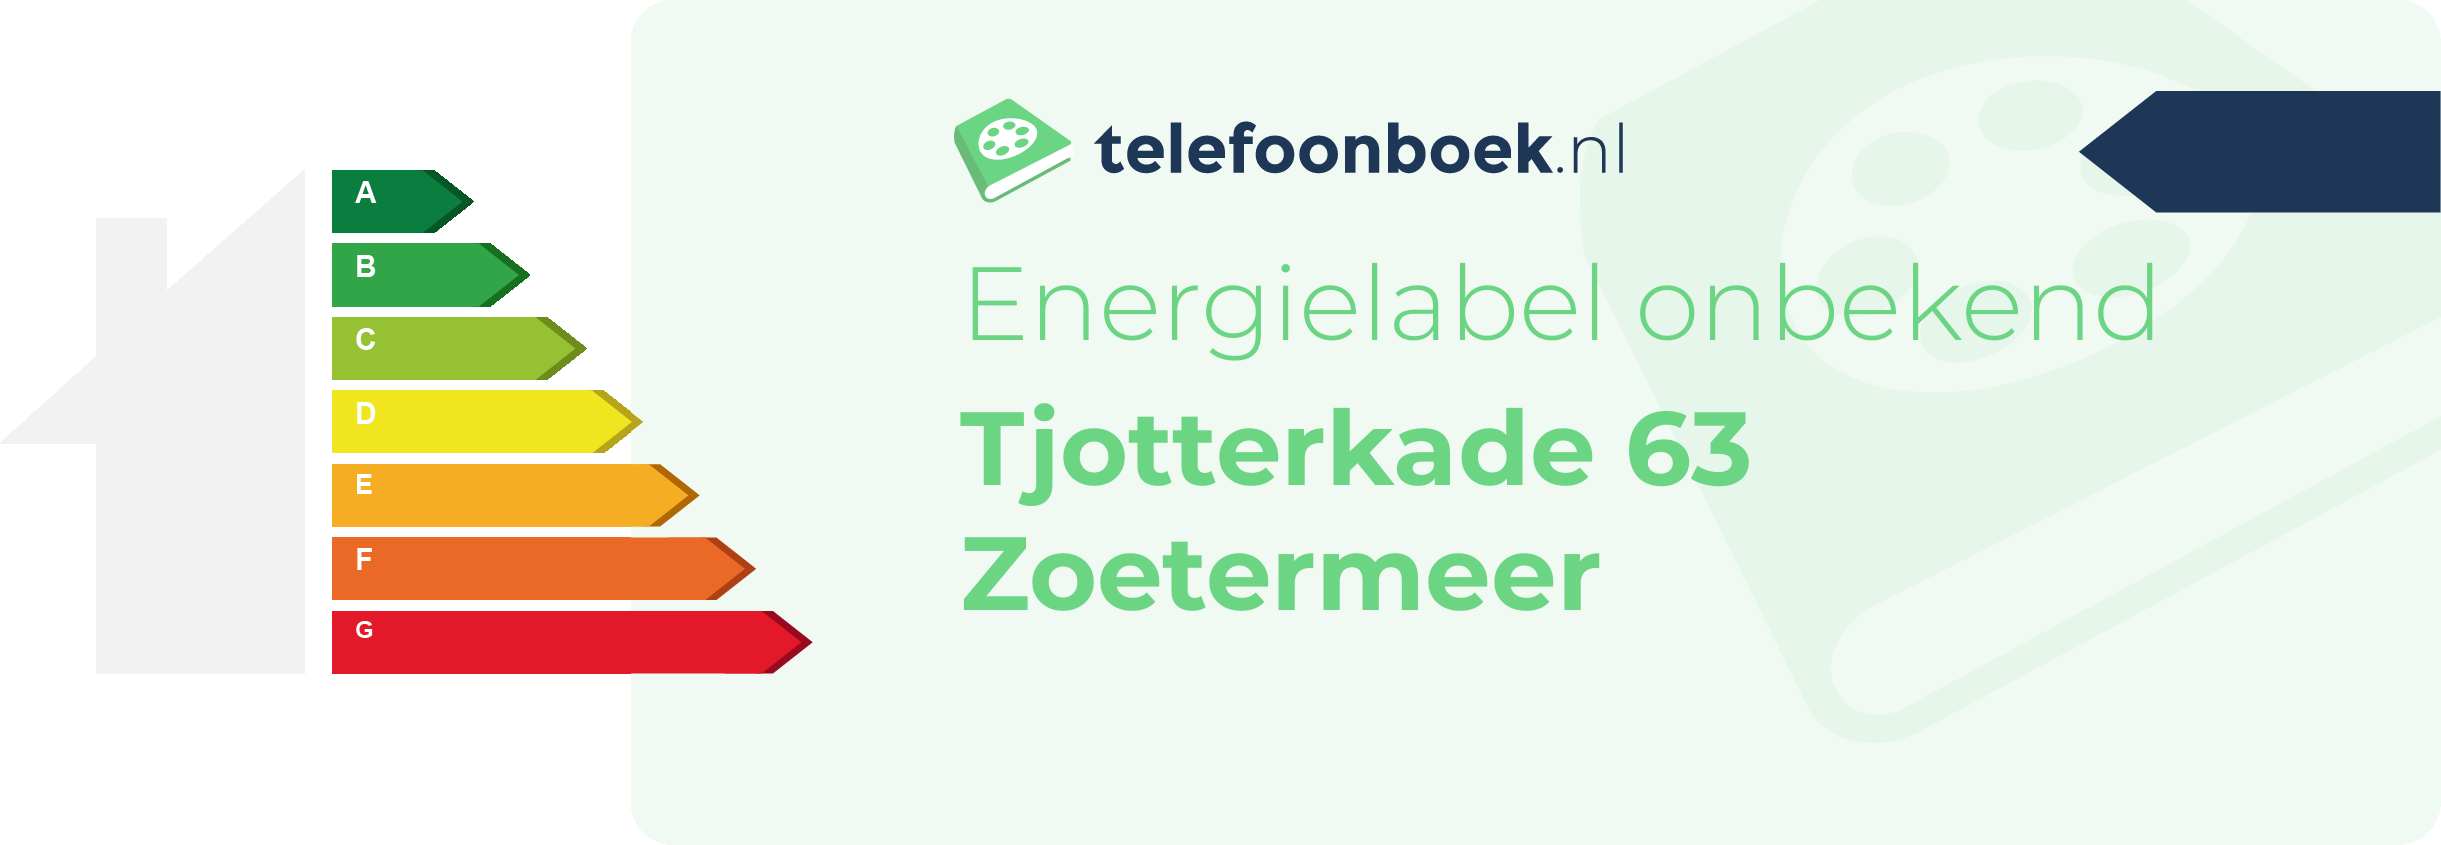 Energielabel Tjotterkade 63 Zoetermeer